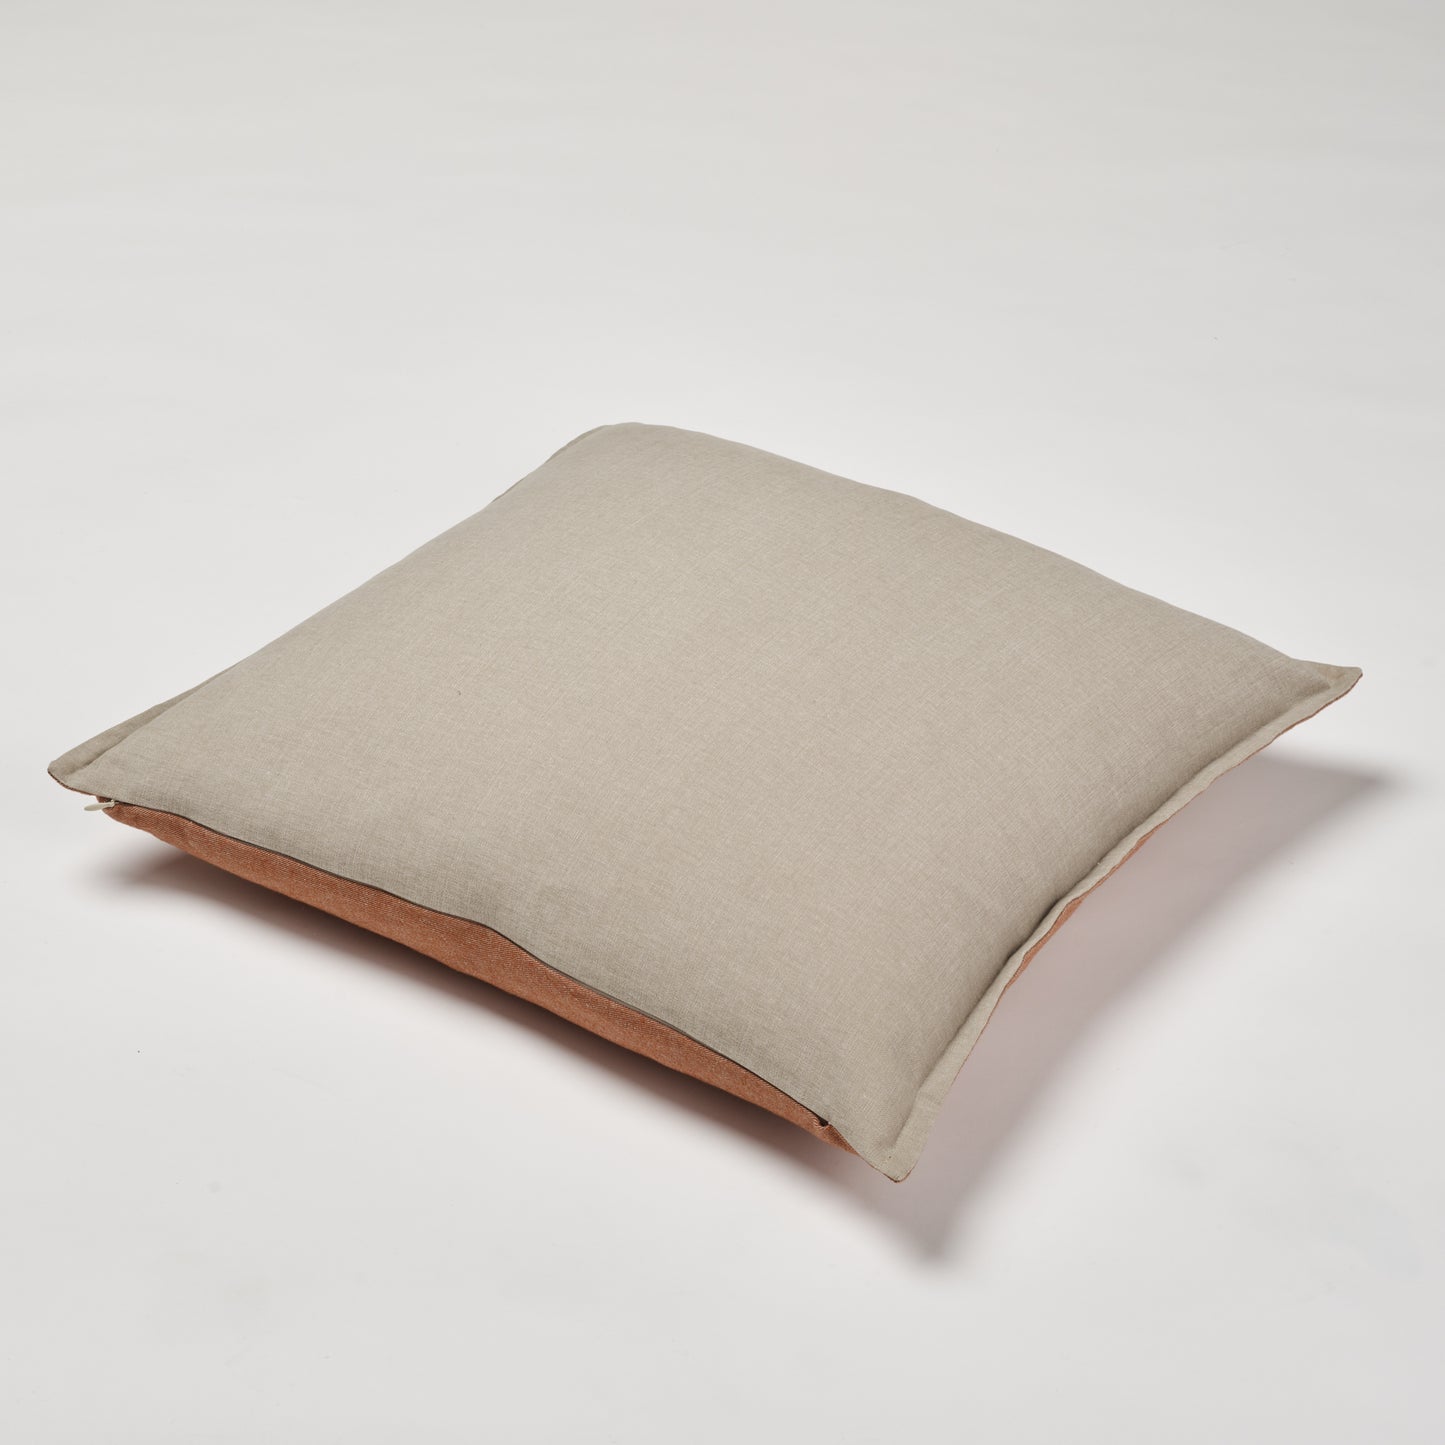 Luxe Pillow 20"x20"